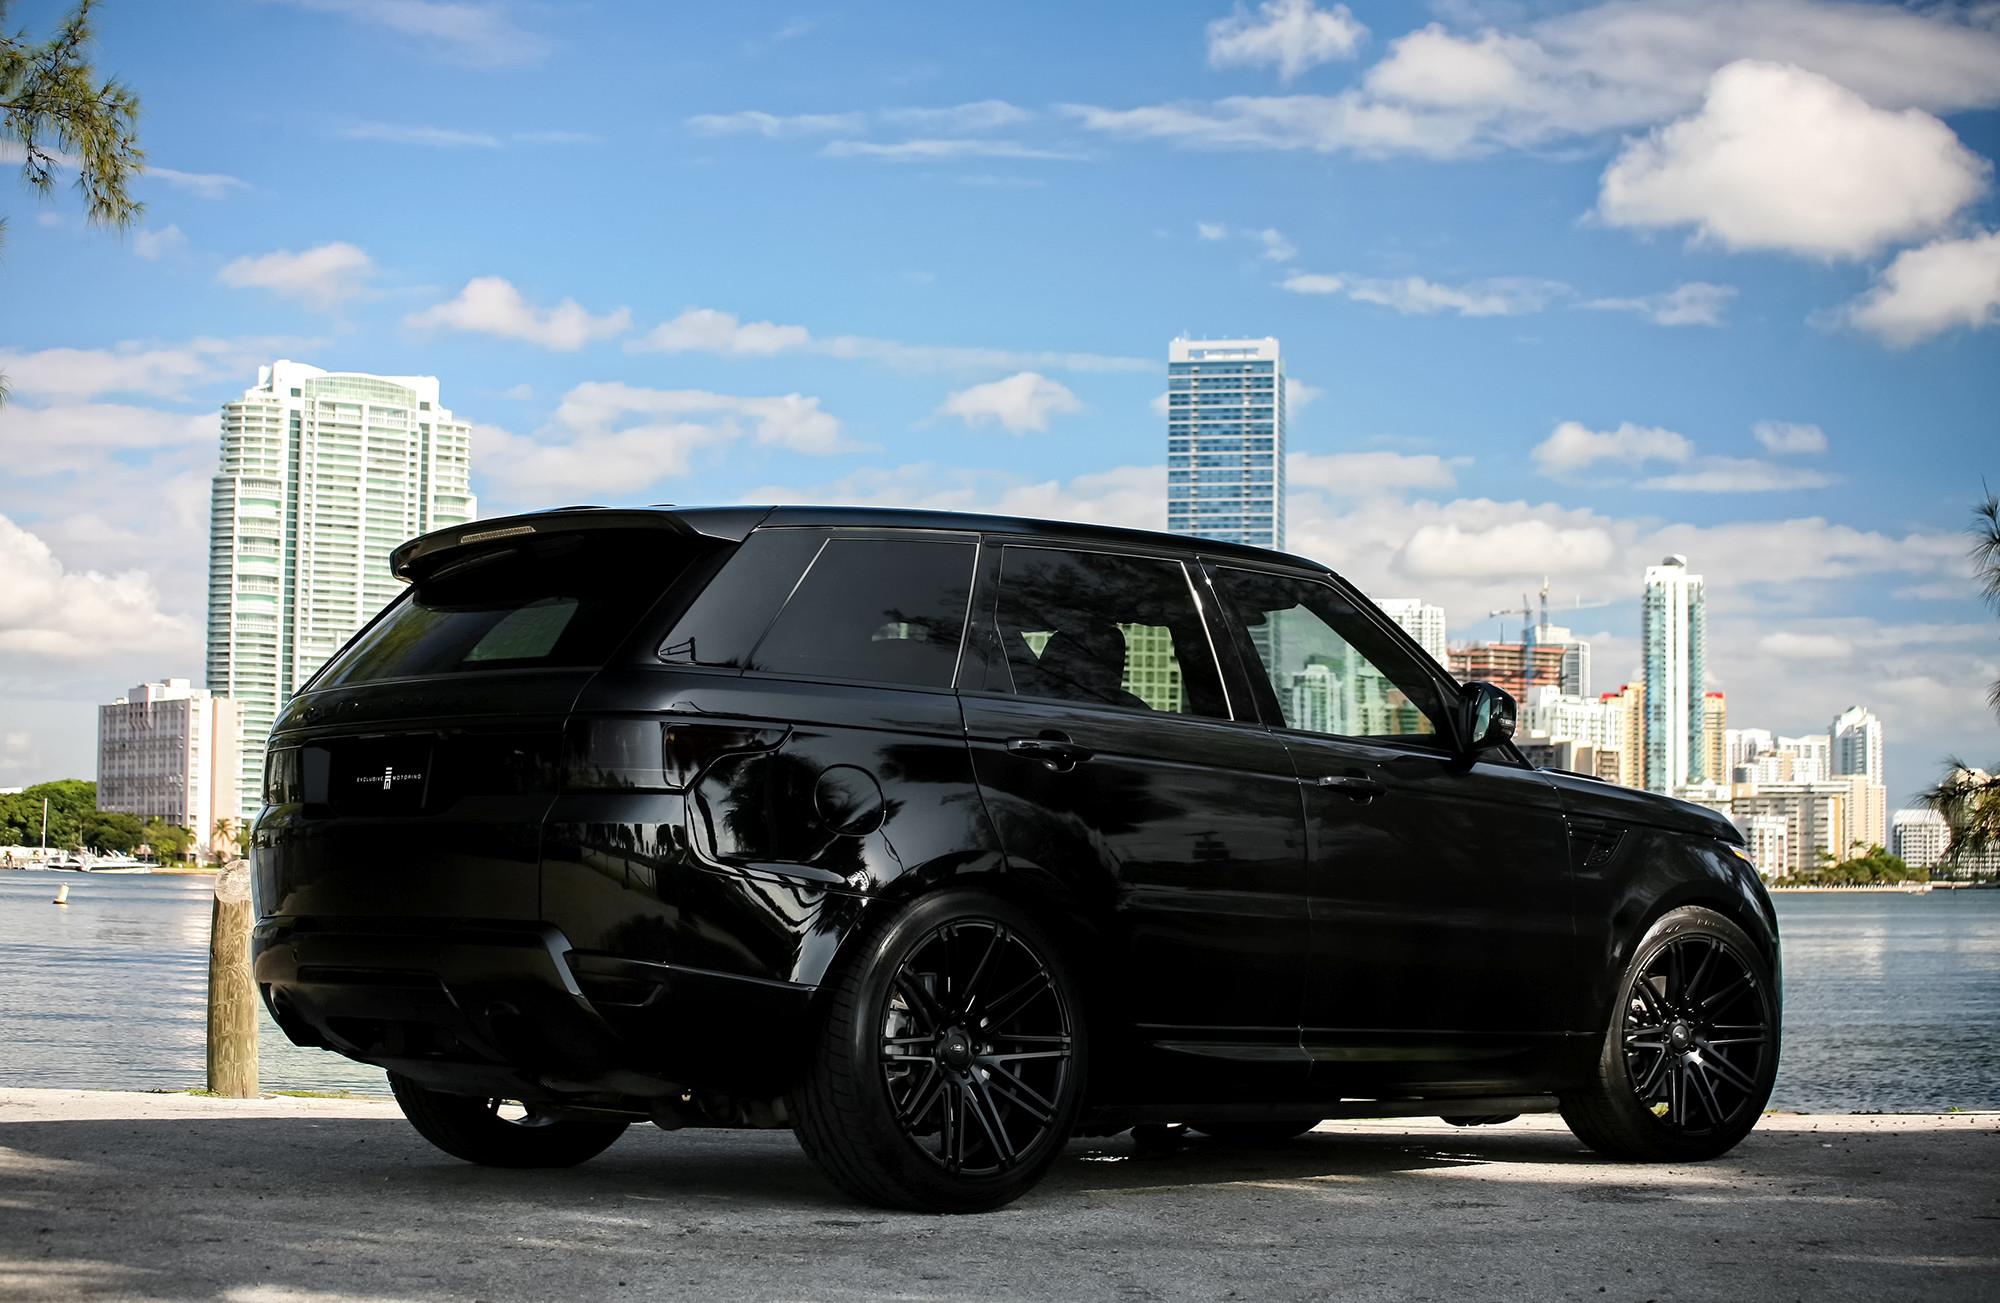 Range - All Black Range Rover Sport 2015 , HD Wallpaper & Backgrounds